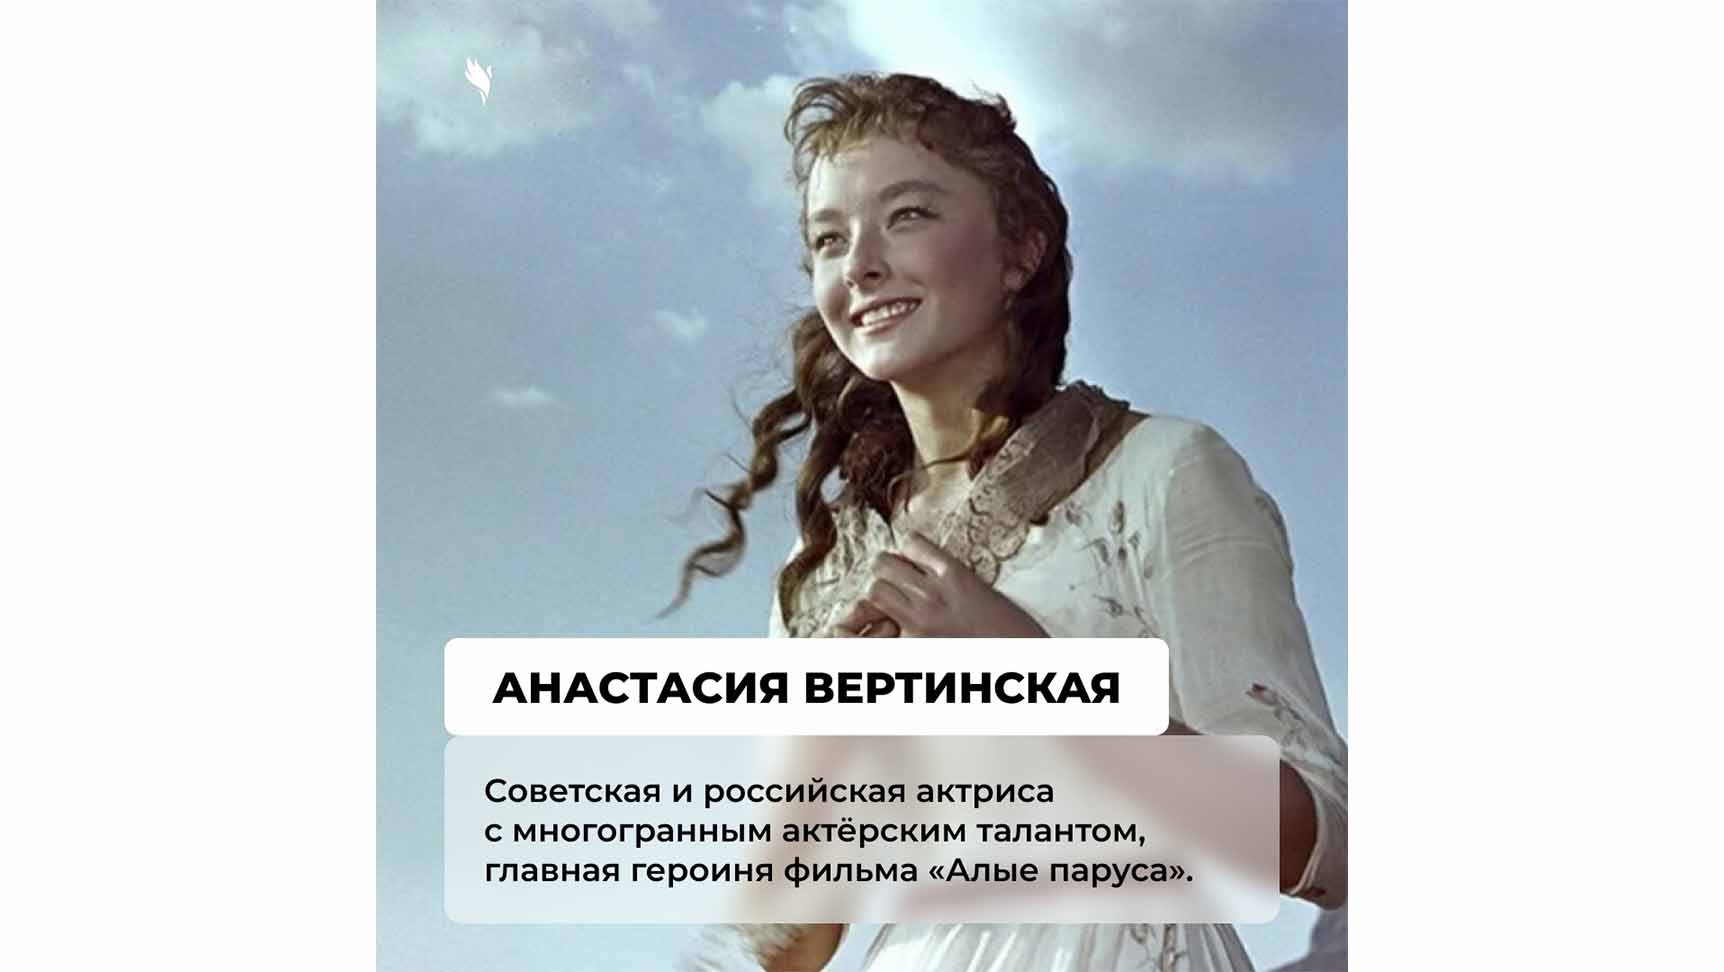 Великие женщины России, которые внесли значимый вклад в становление страны: поздравление от Центра патриотического воспитания Ярославской области